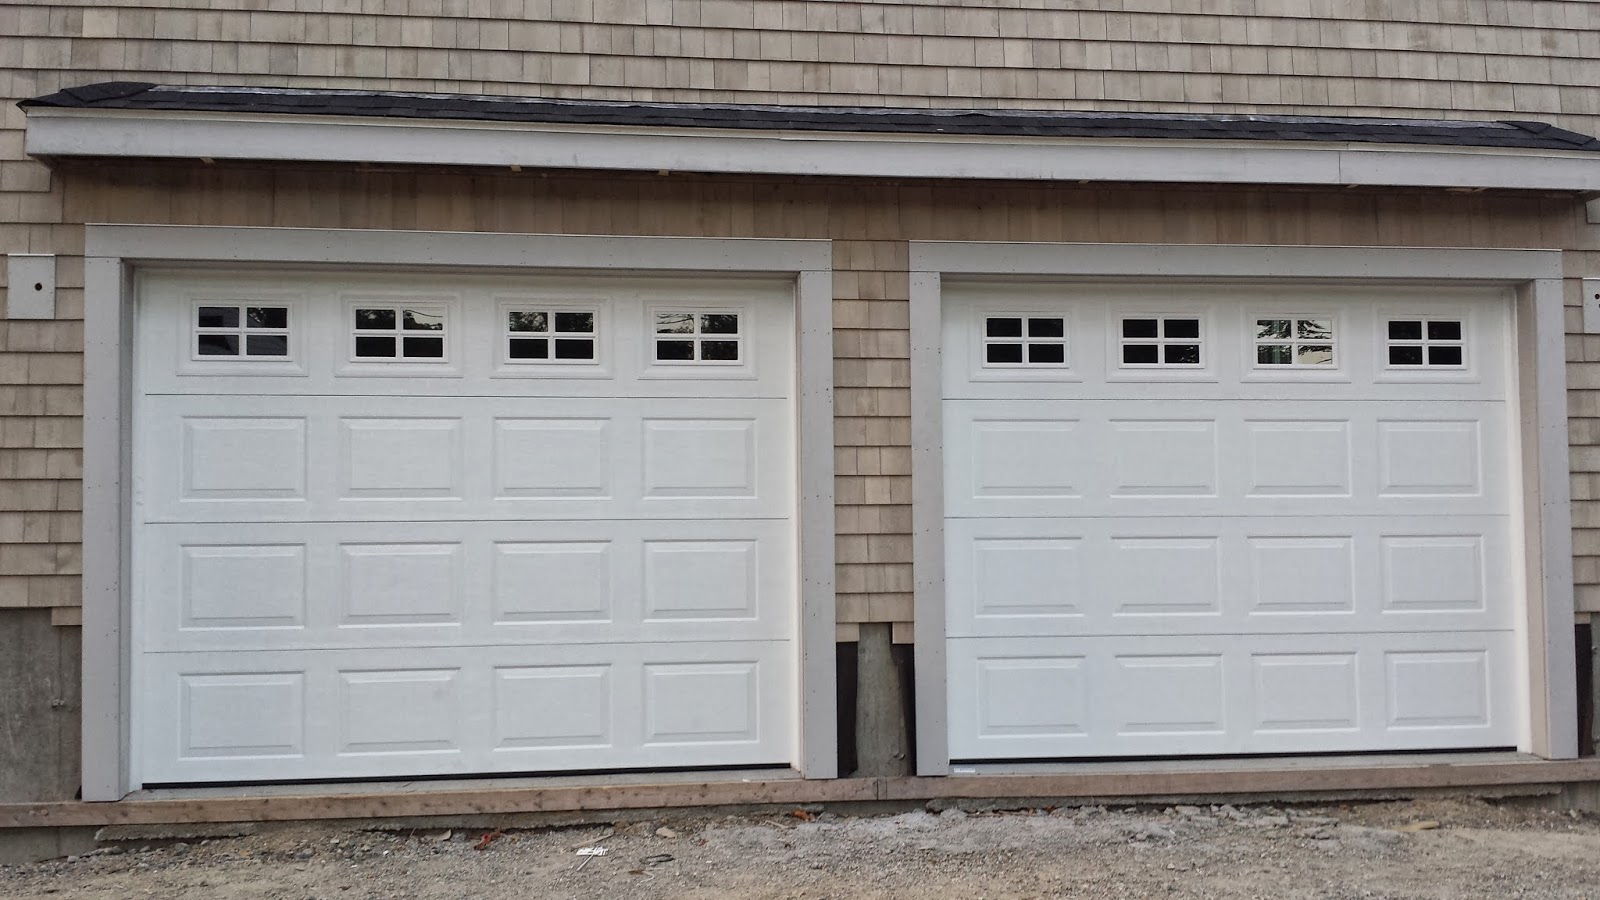 Garage Door Replacement and Installation- The Garage Door Medic llc